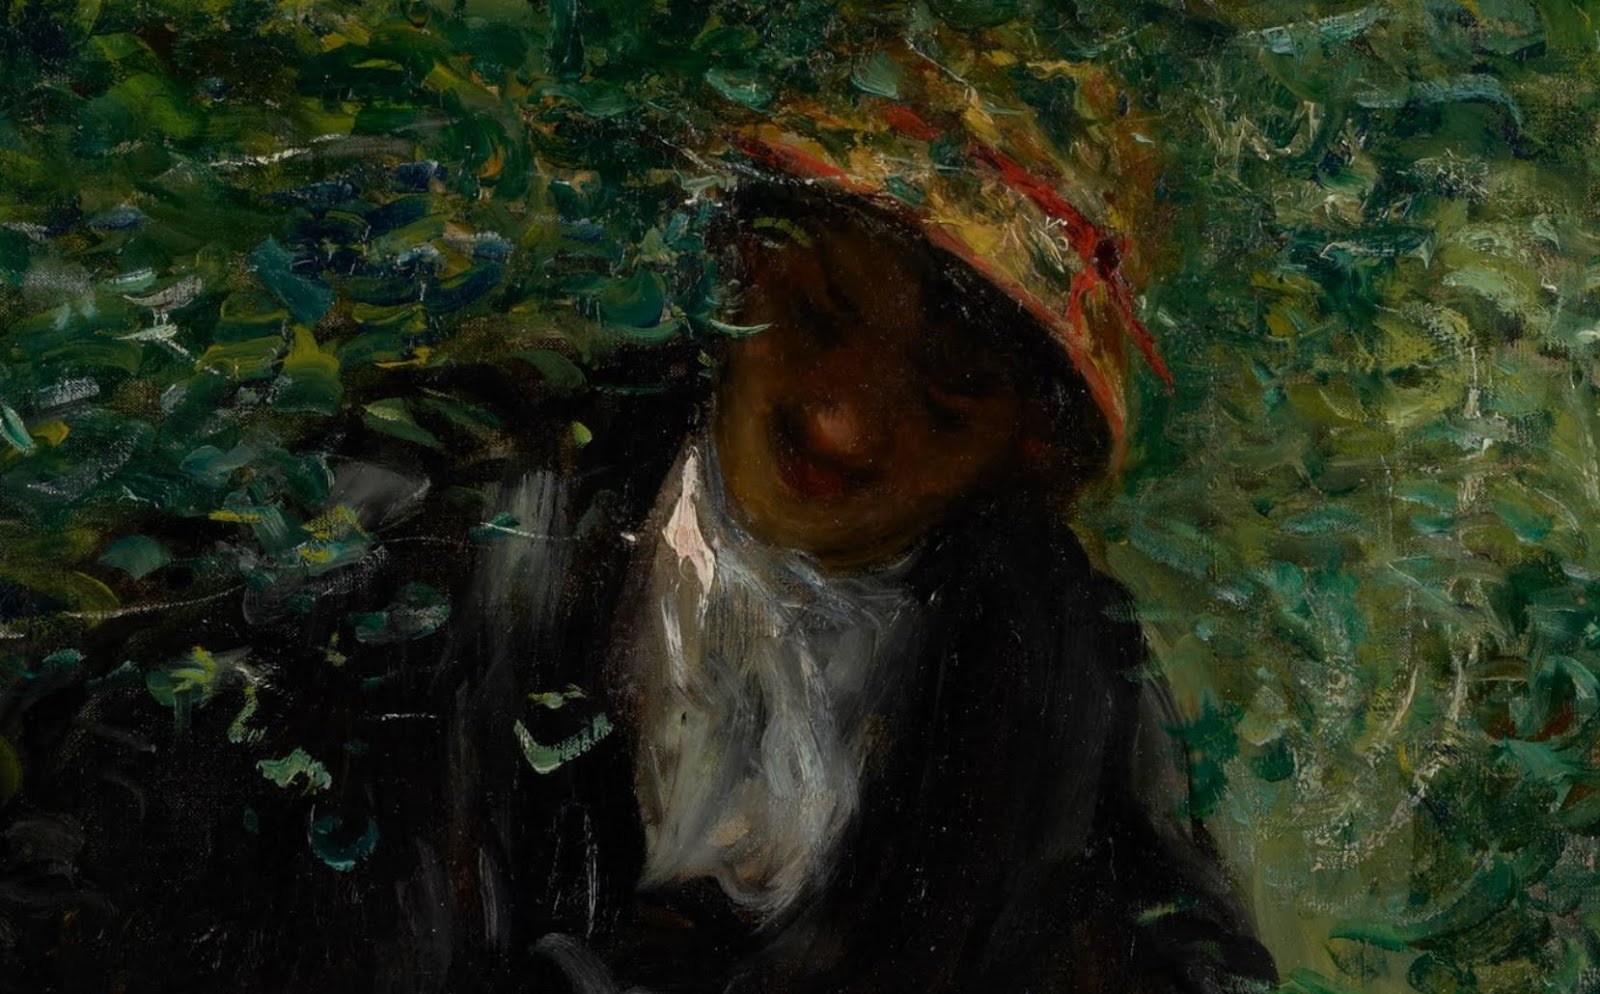 Pierre+Auguste+Renoir-1841-1-19 (275).JPG